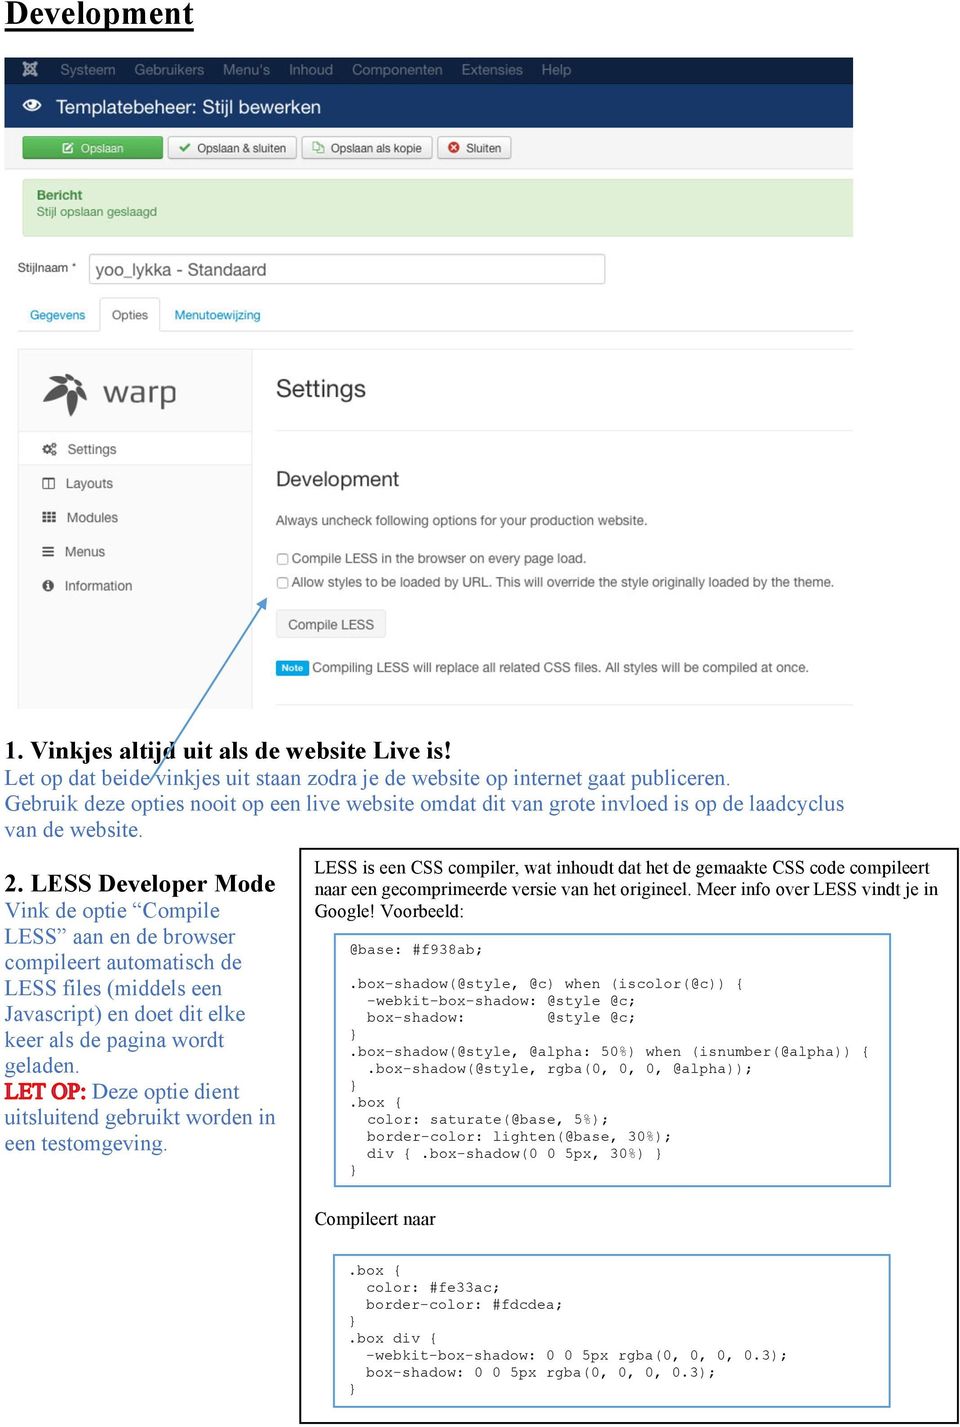 LESS Developer Mode Vink de optie Compile LESS aan en de browser compileert automatisch de LESS files (middels een Javascript) en doet dit elke keer als de pagina wordt geladen.